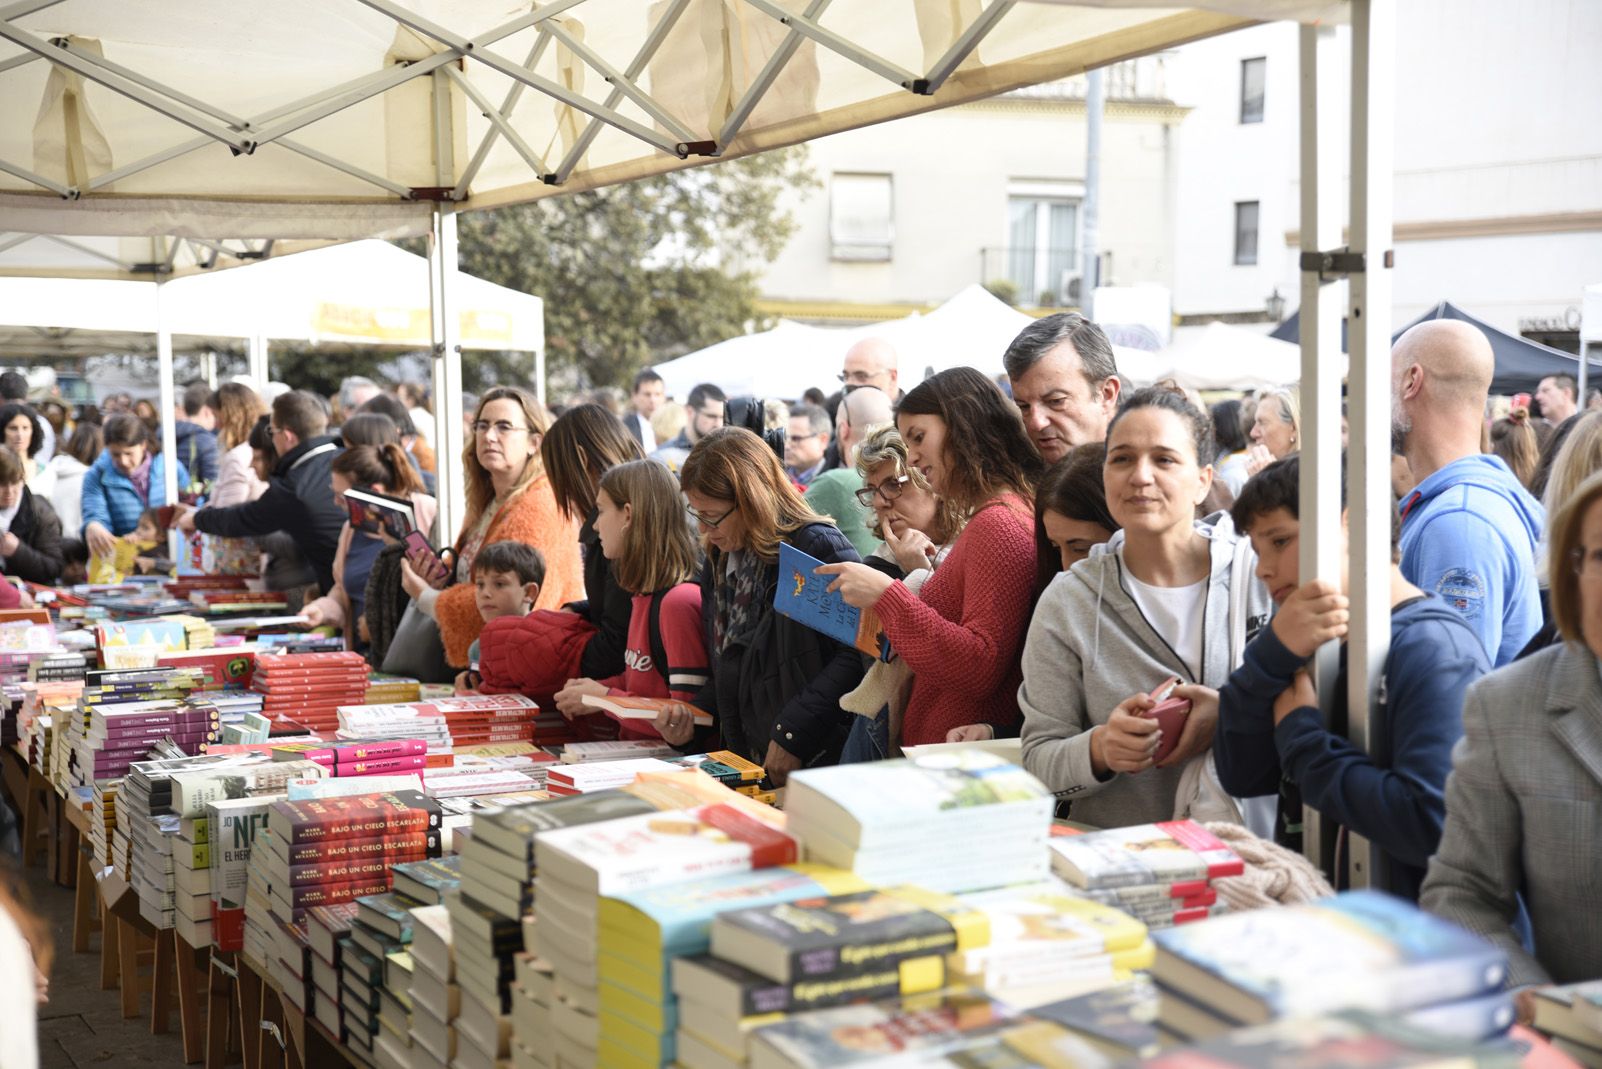 Venta de llibres durant la diada de Sant Jordi. Foto: Bernat Millet.